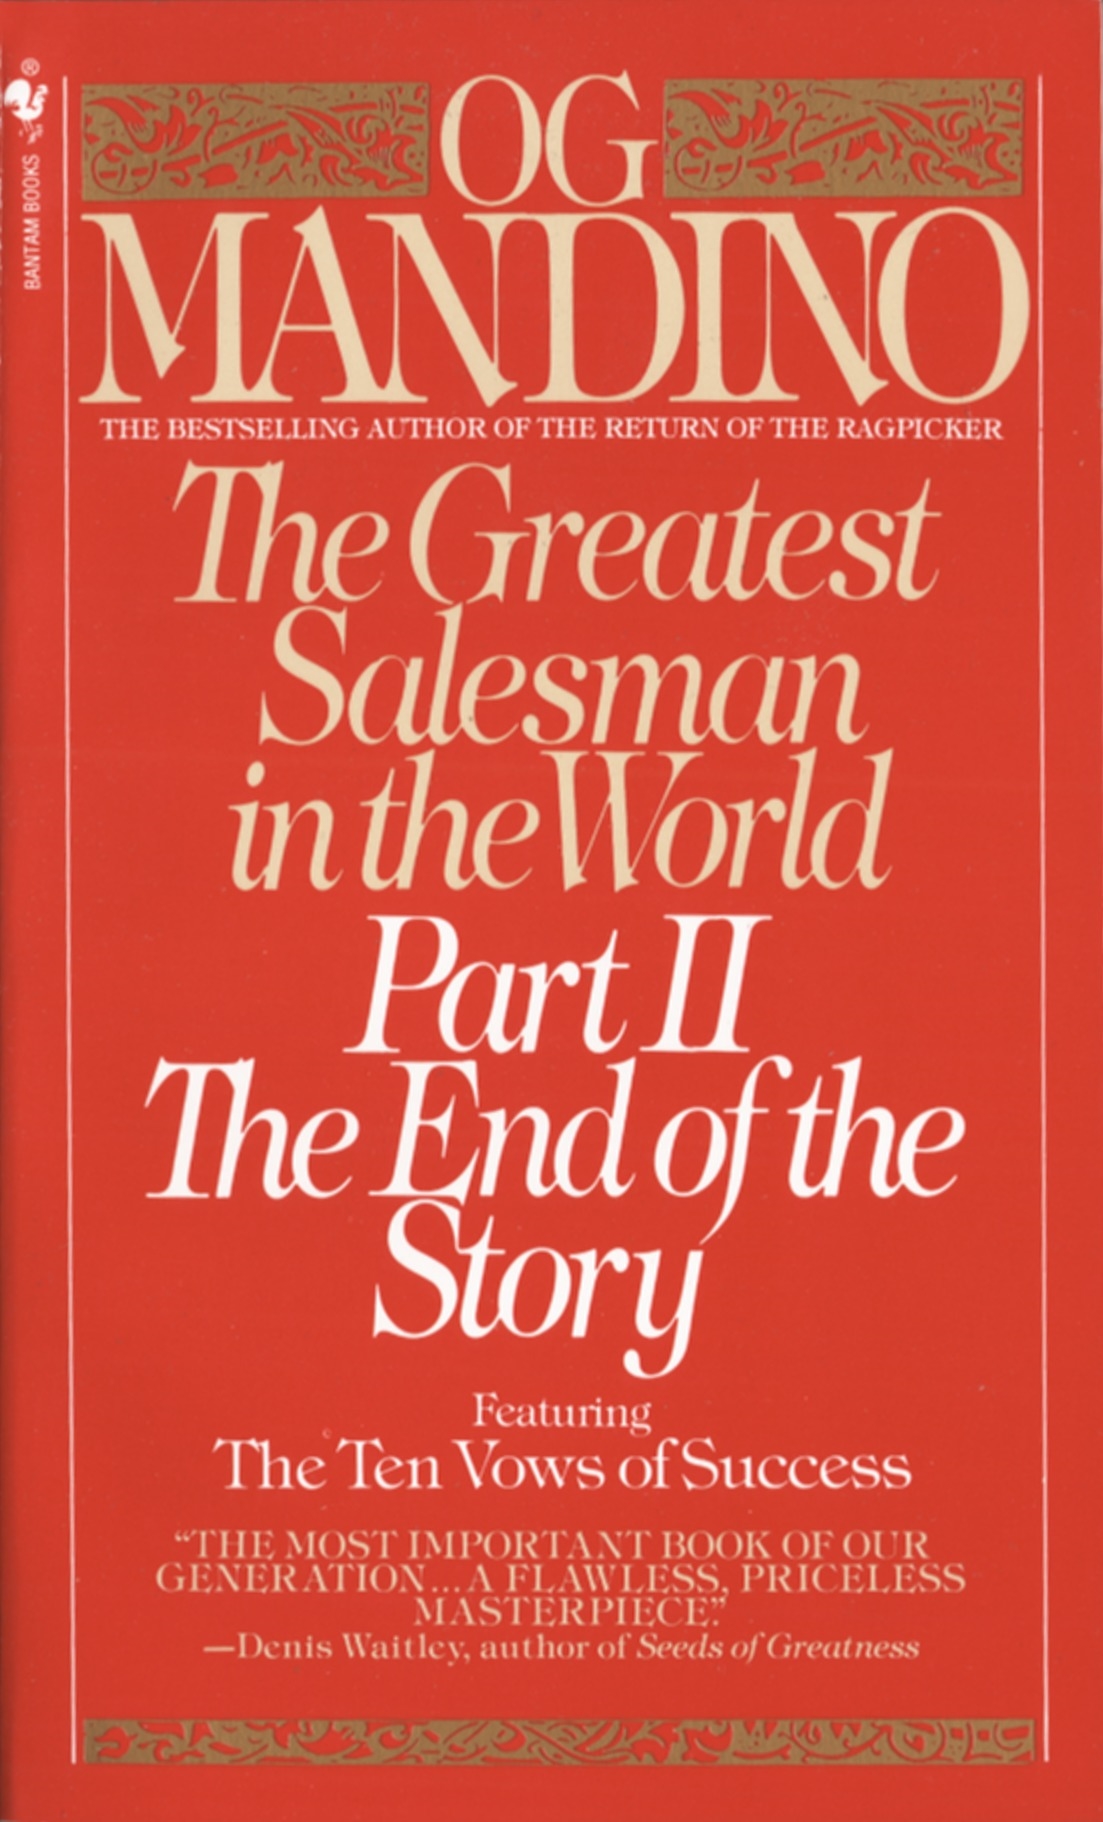 The Greatest Salesman in the World by Og Mandino - Penguin Books Australia